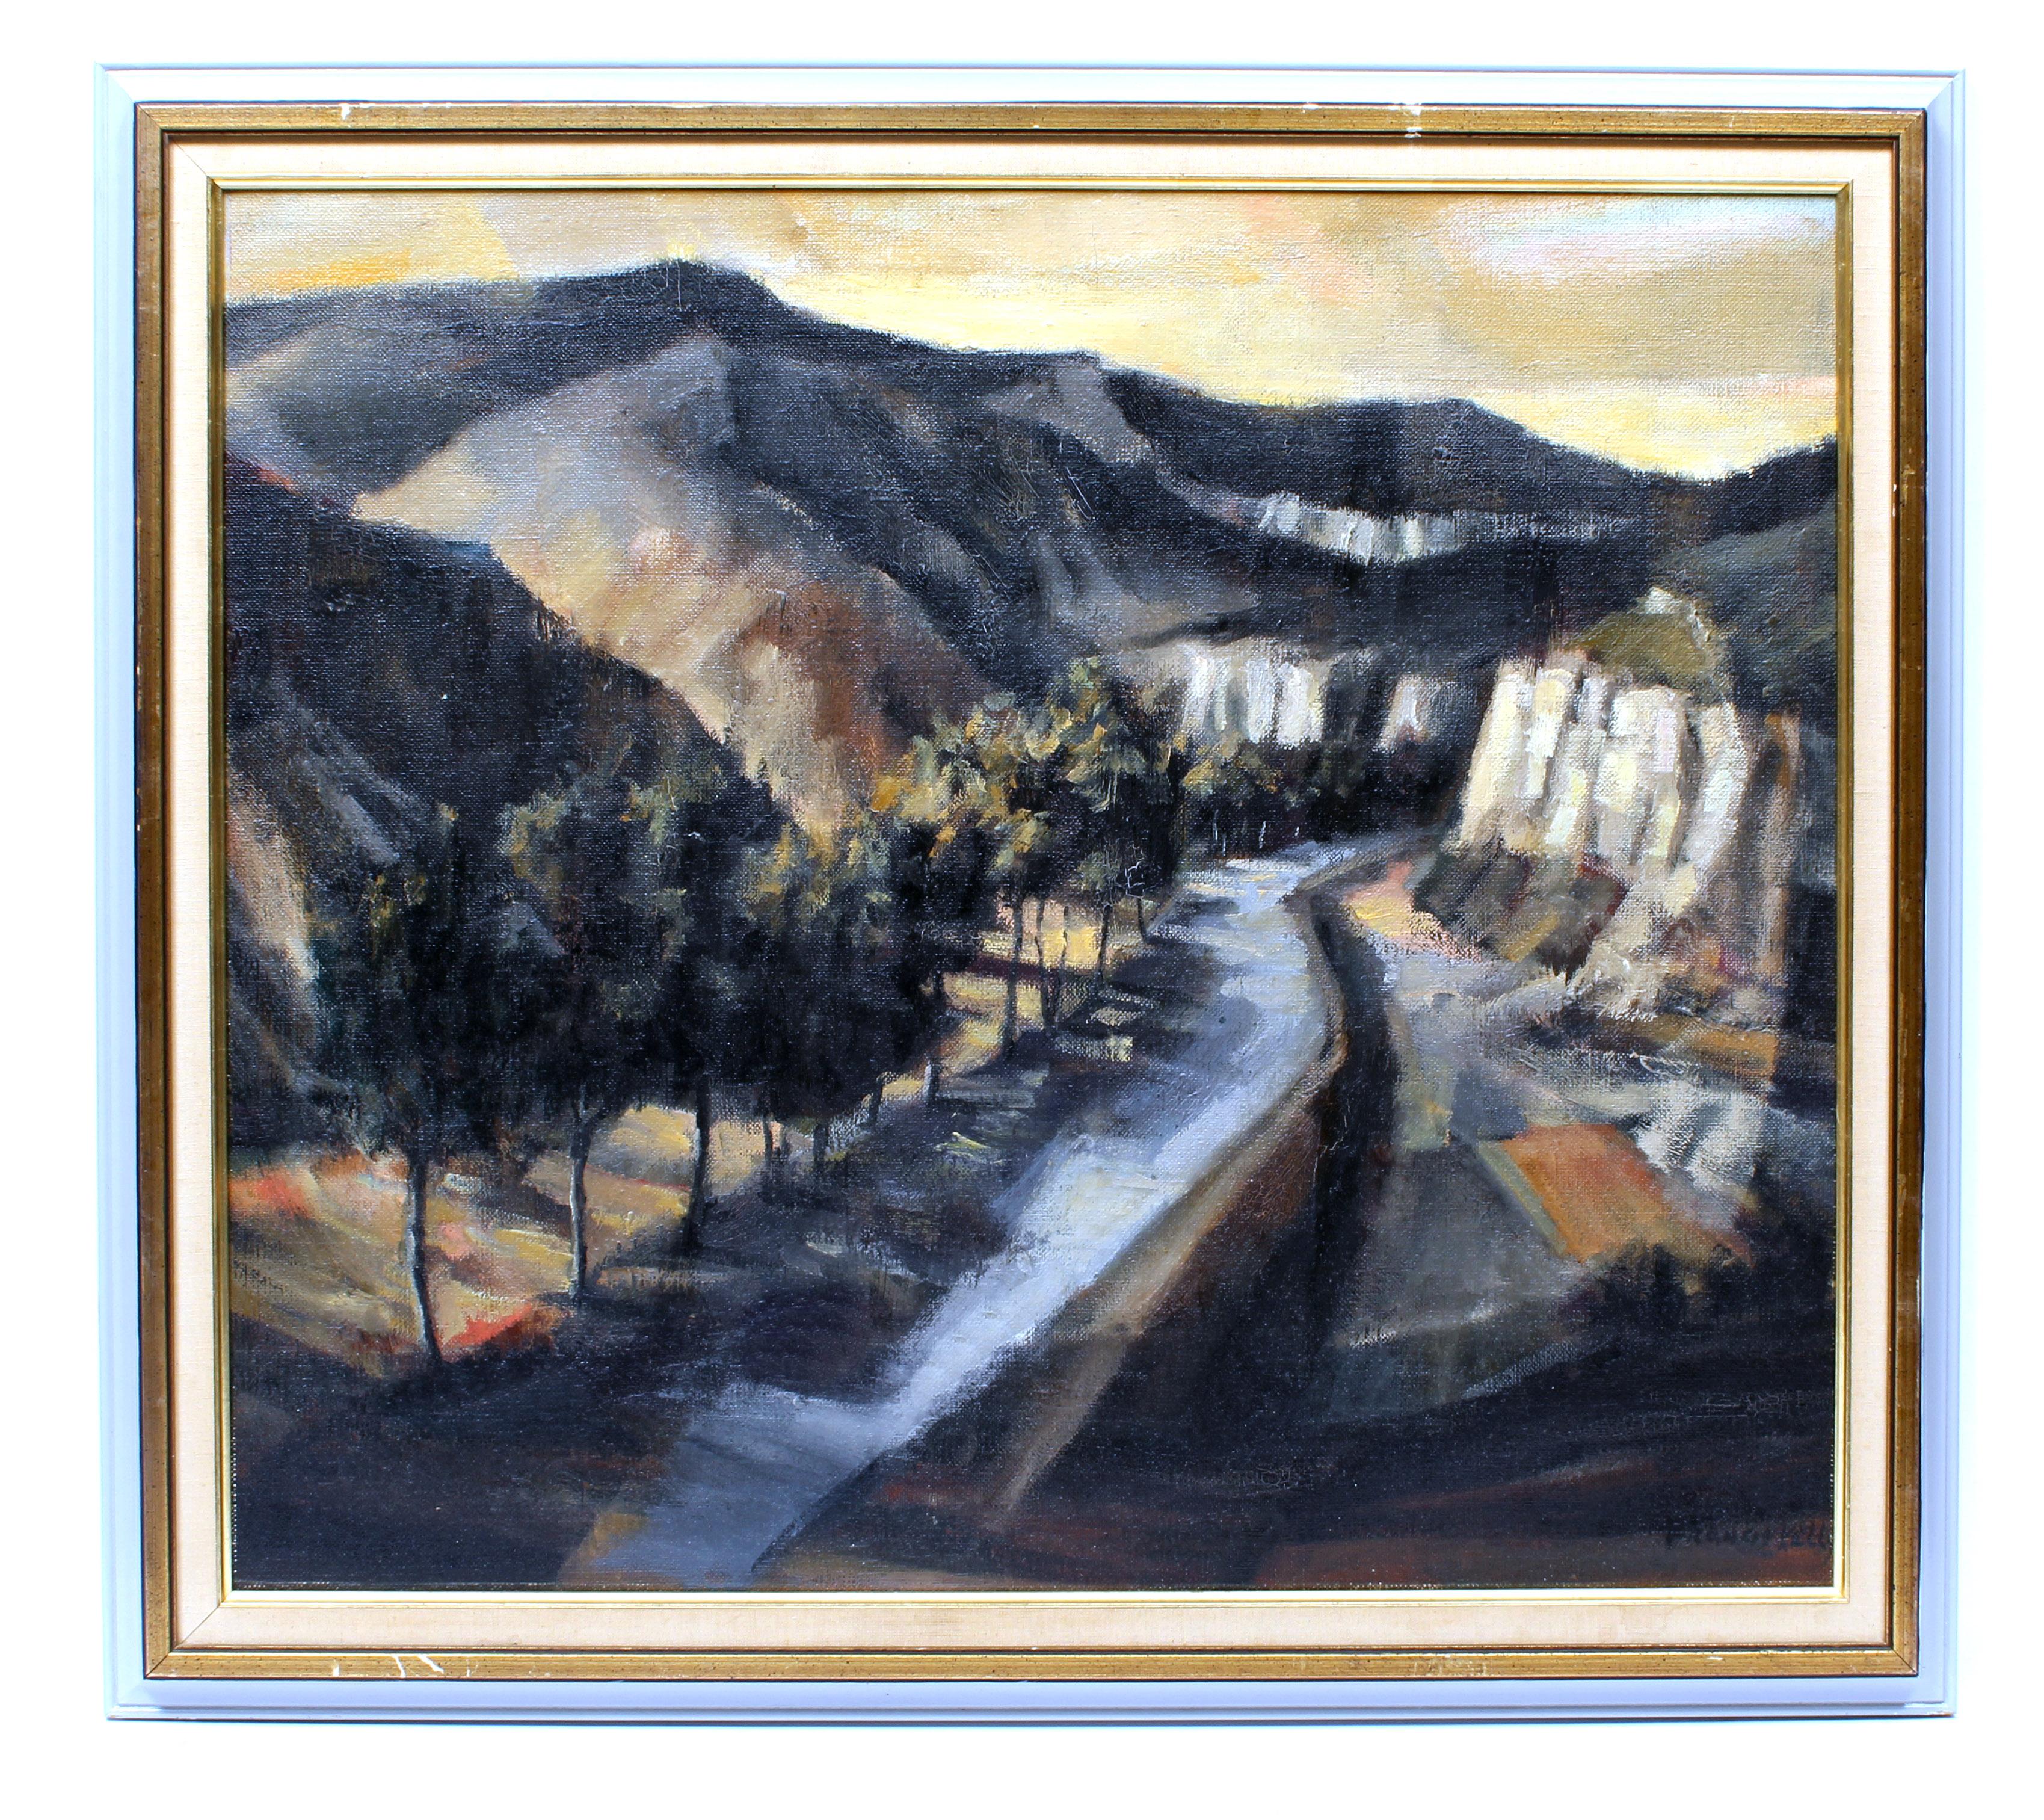 Modernistisches modernistisches amerikanisches Landschaftsgemälde 1950 Berg Schatten Selten gerahmt Tranquil – Painting von Francis Kelly